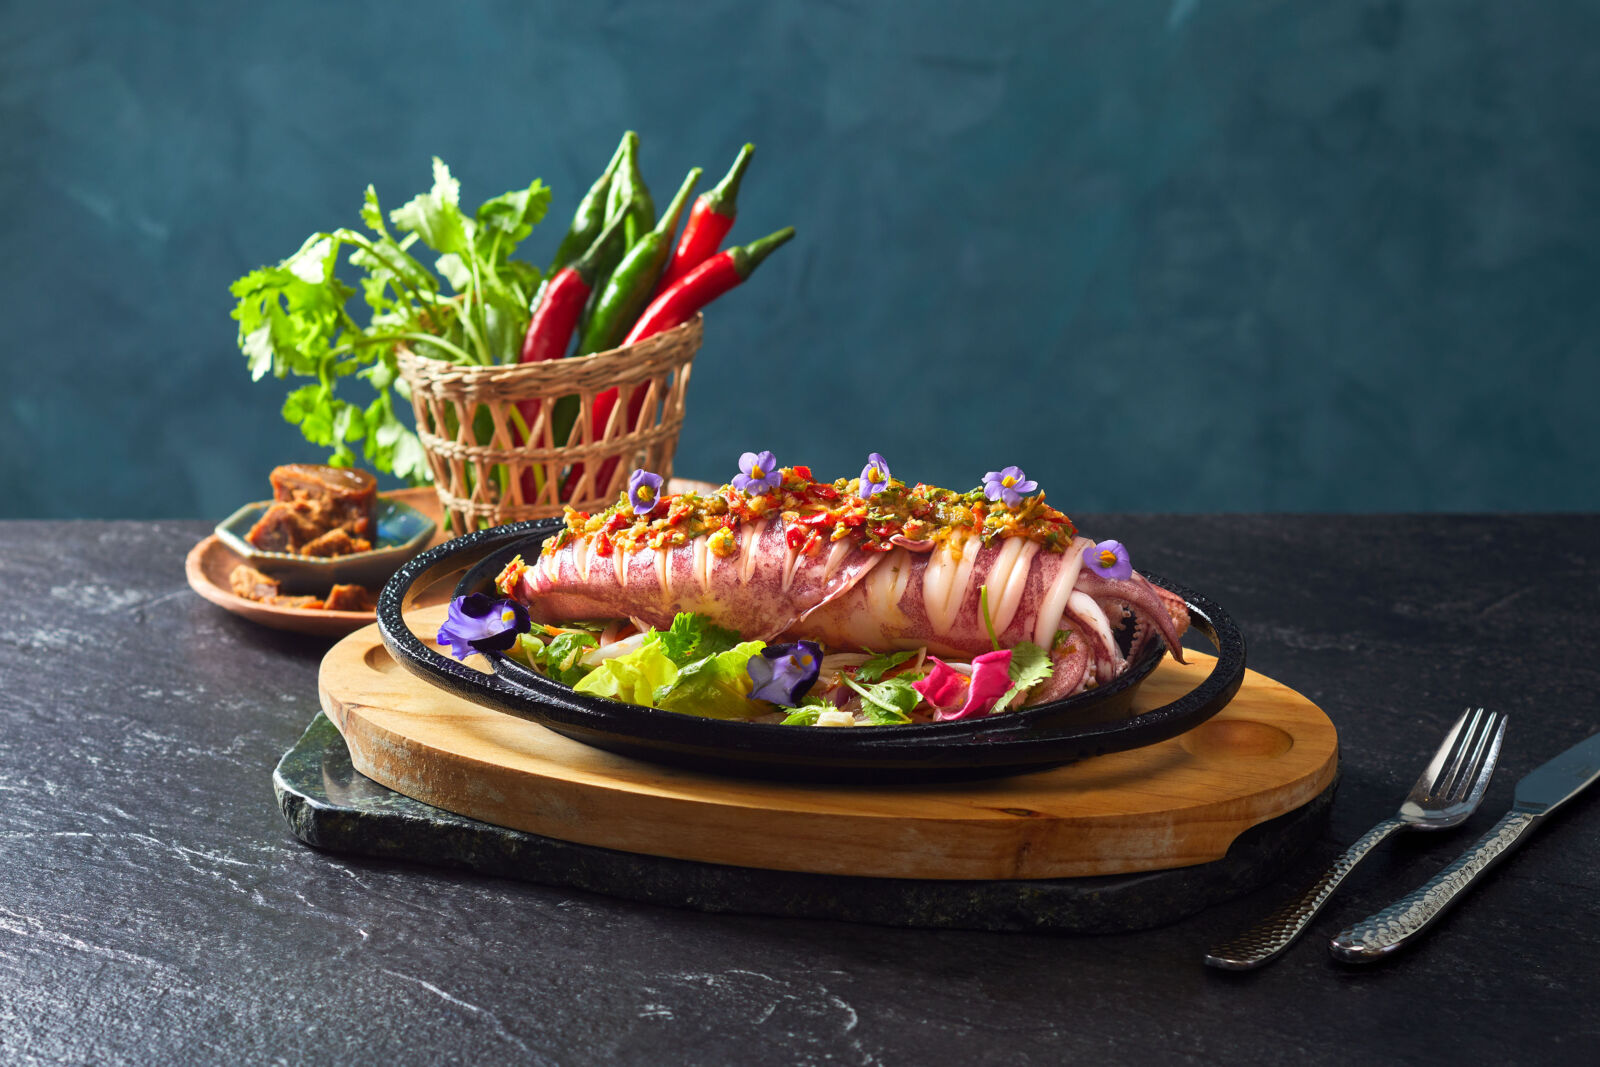 【有影】Asia49亞洲料理及酒廊迎來印尼名廚 推全新南洋榜單美食菜單 249